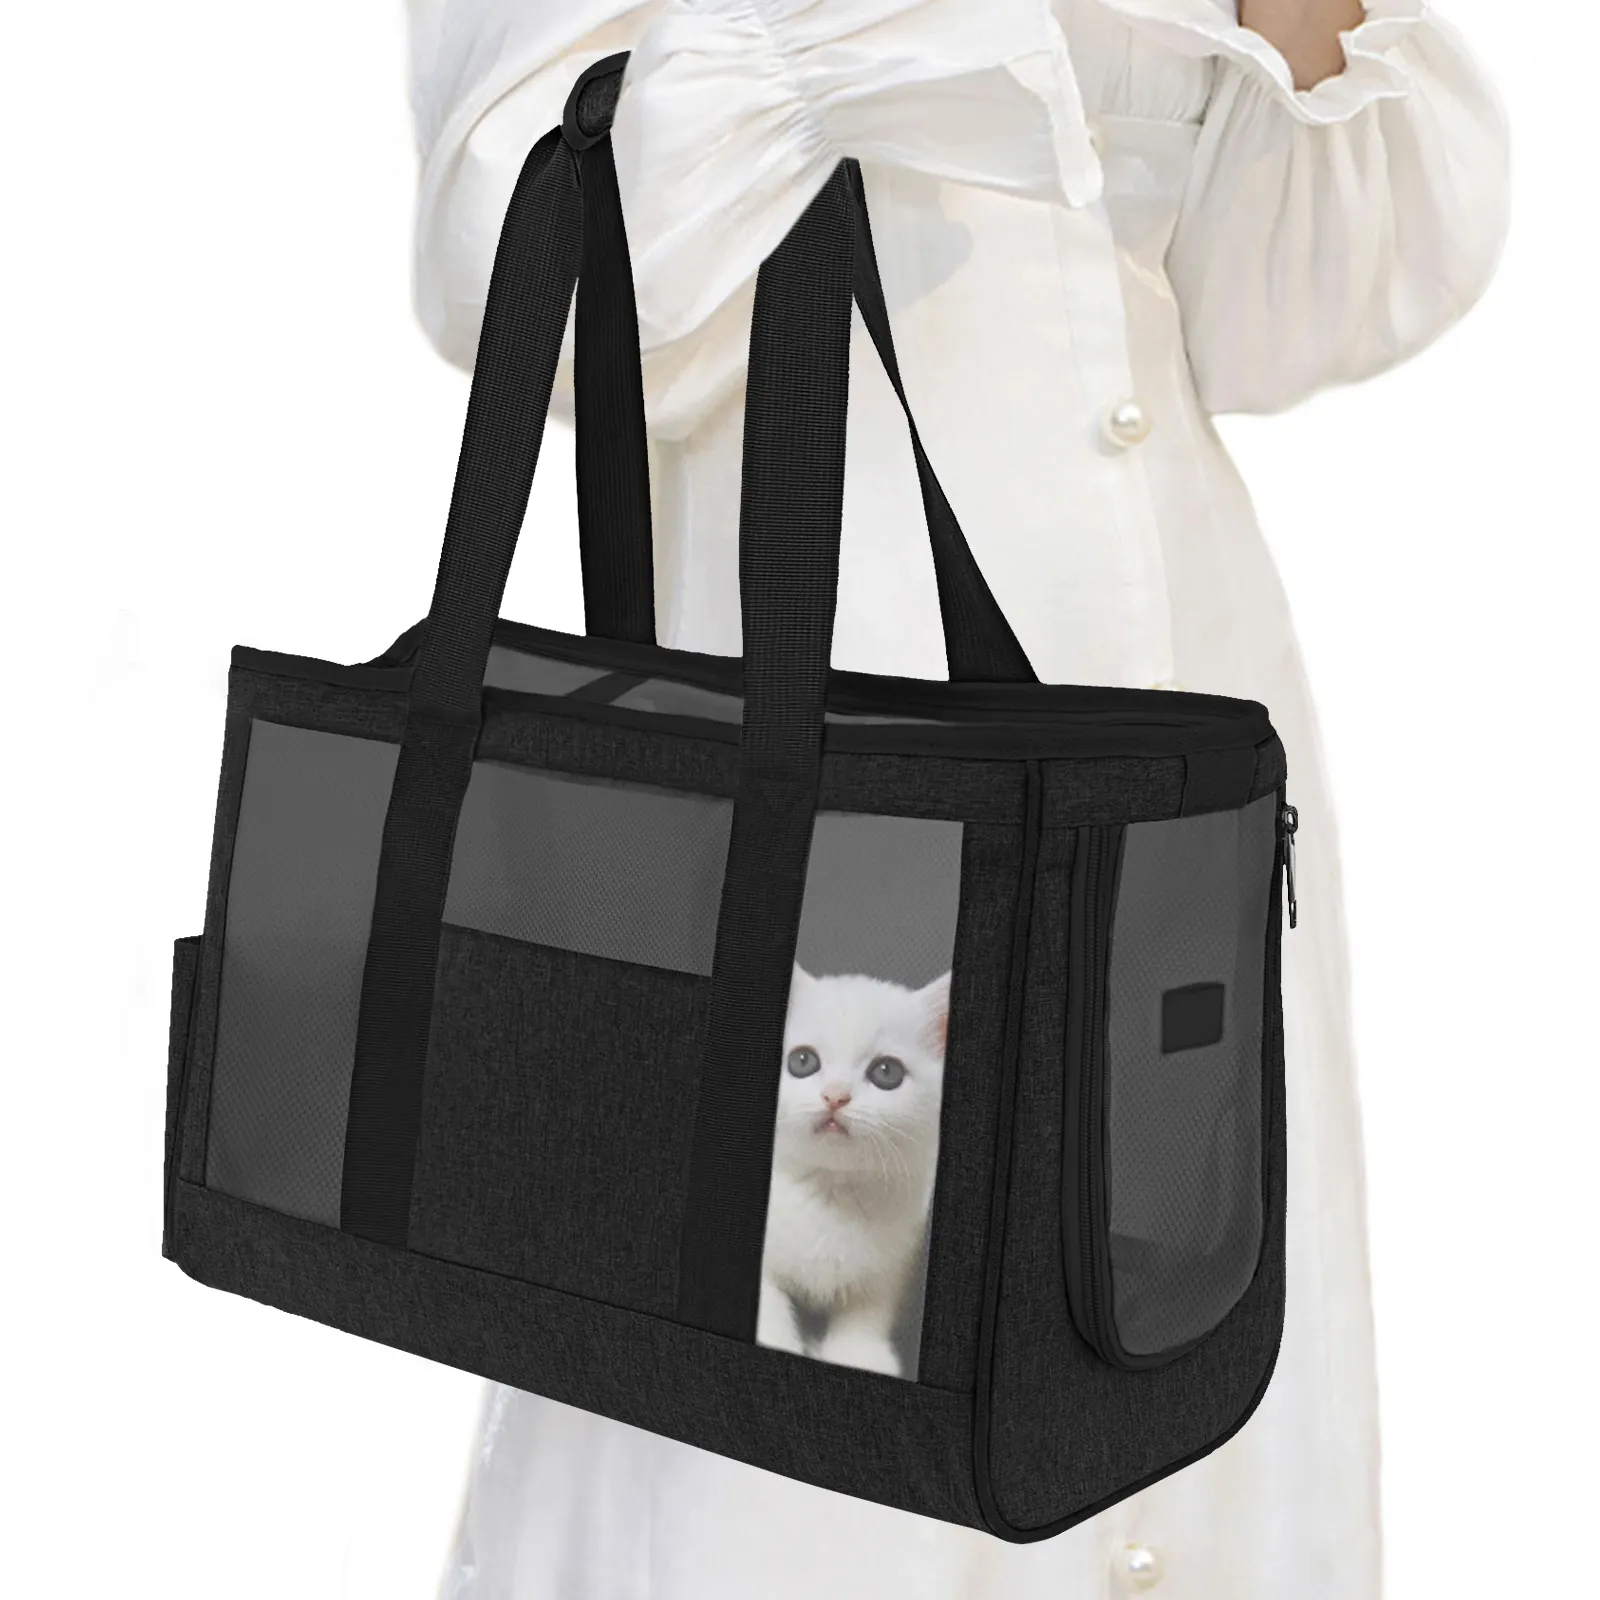 กระเป๋าใส่สัตว์เลี้ยงกระเป๋าใส่สัตว์เลี้ยงกระเป๋าเป้สะพายหลังสำหรับสัตว์เลี้ยงแมวสุนัขคู่